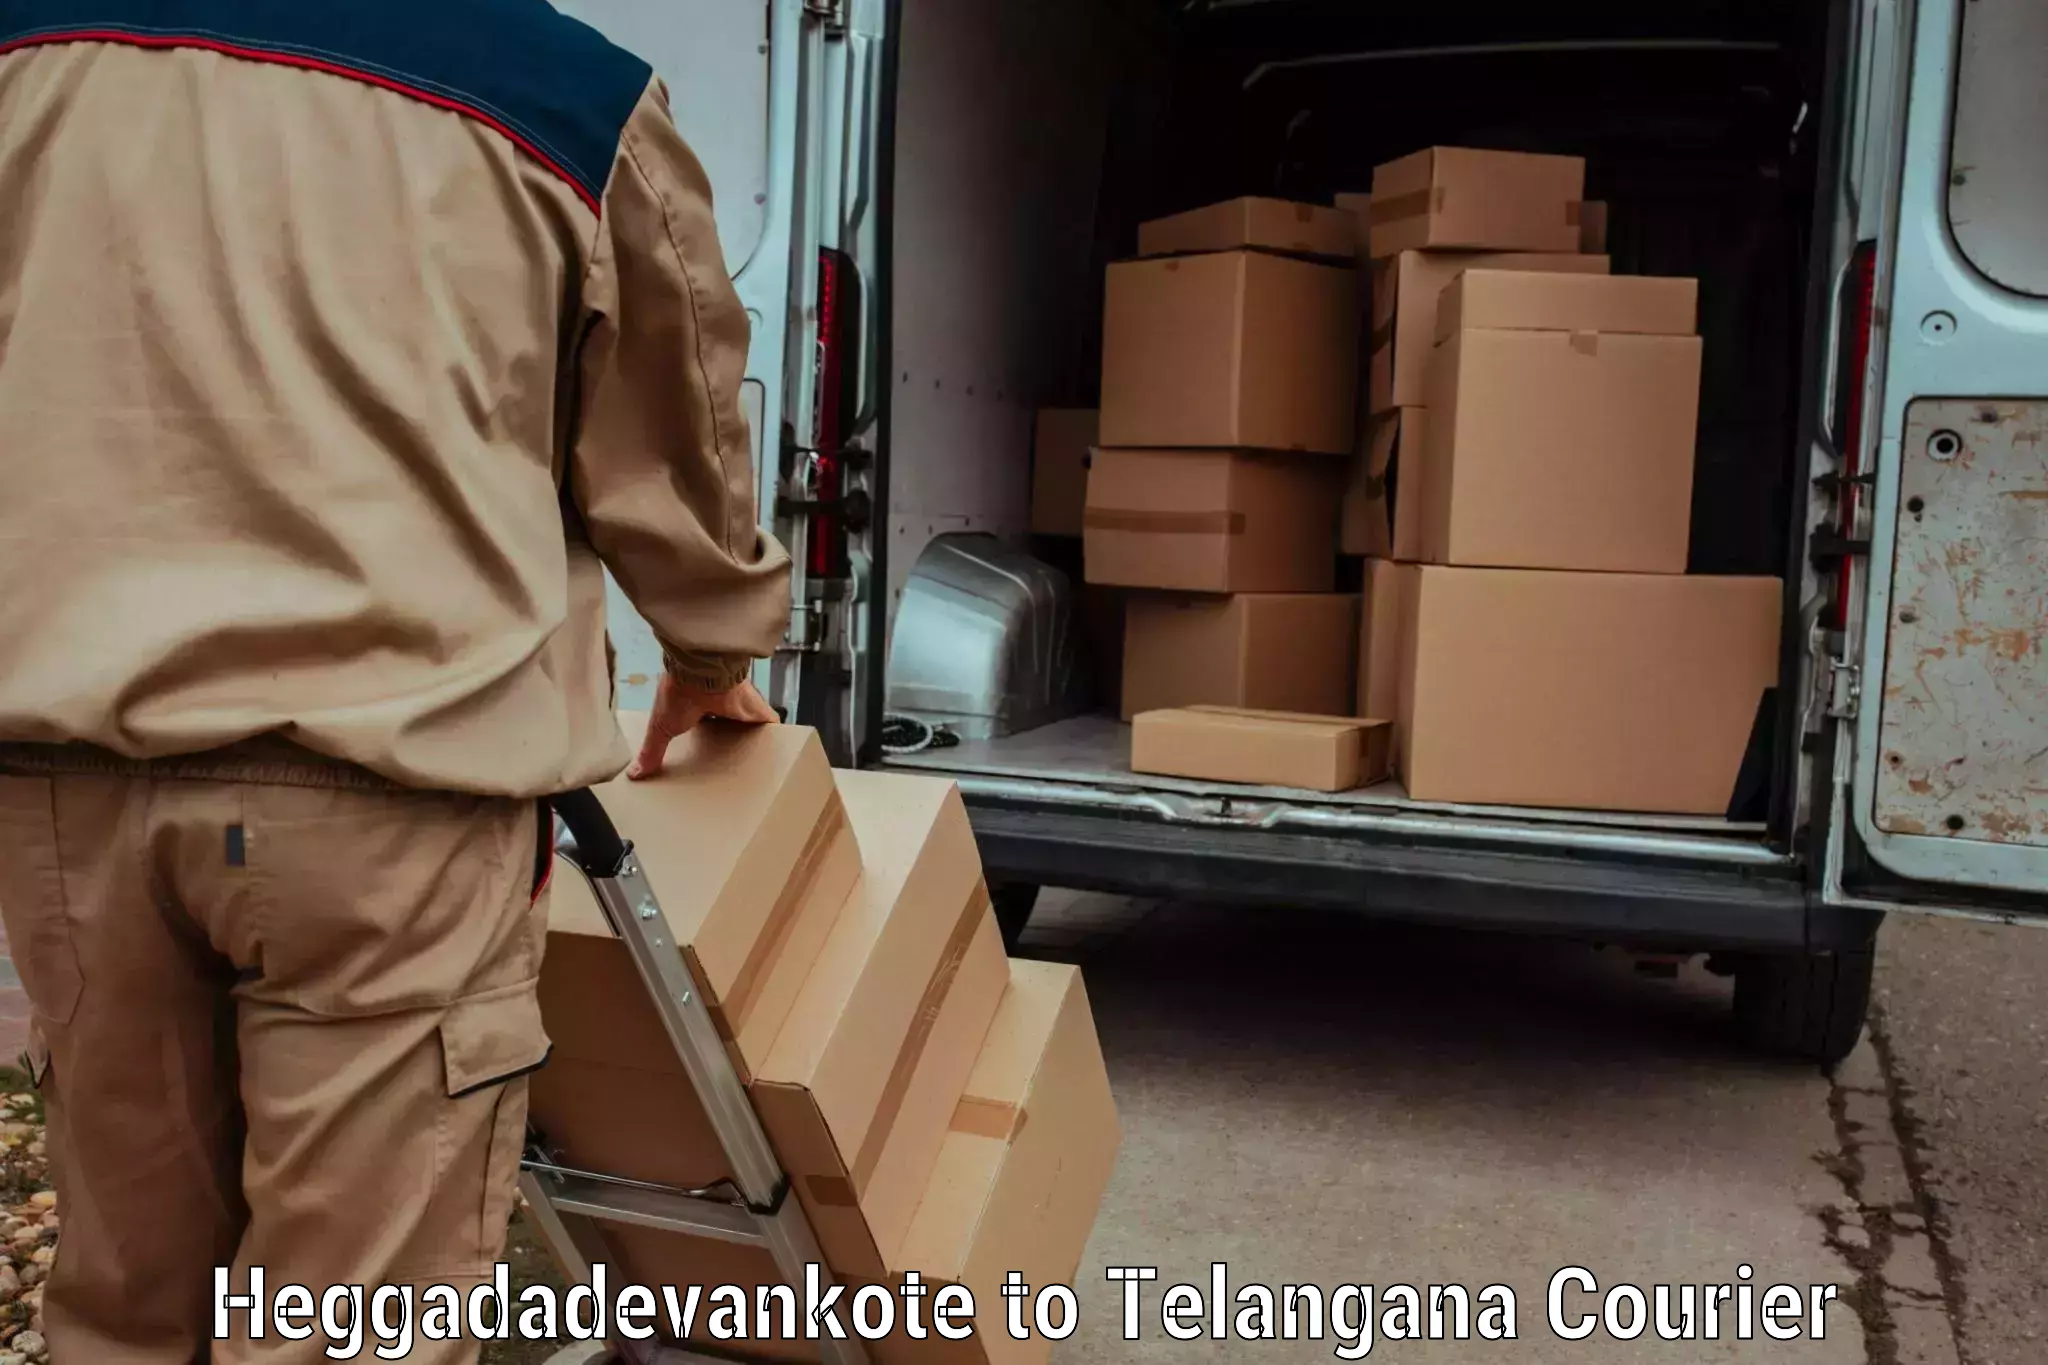 Efficient parcel service Heggadadevankote to Bijinapalle